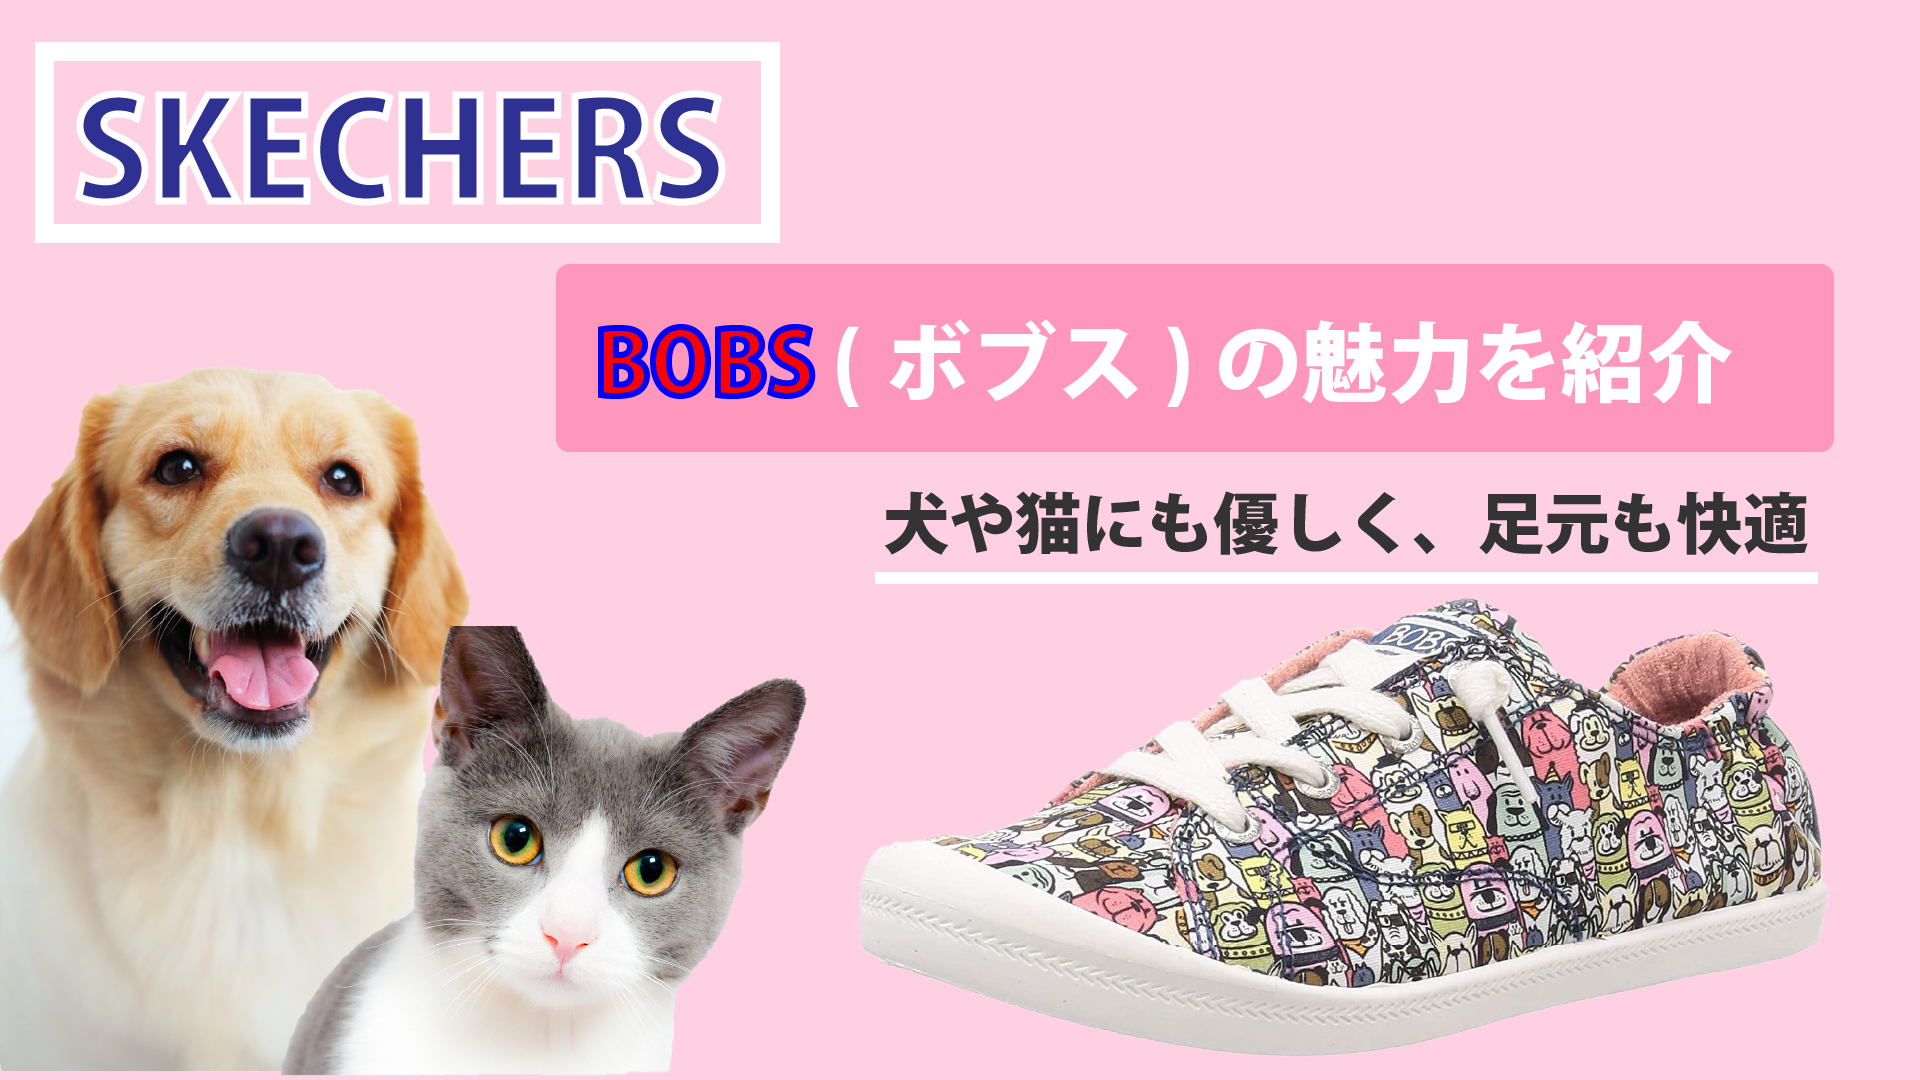 スケッチャーズのスニーカー「BOBS（ボブス）」で犬や猫を救う活動を支援！